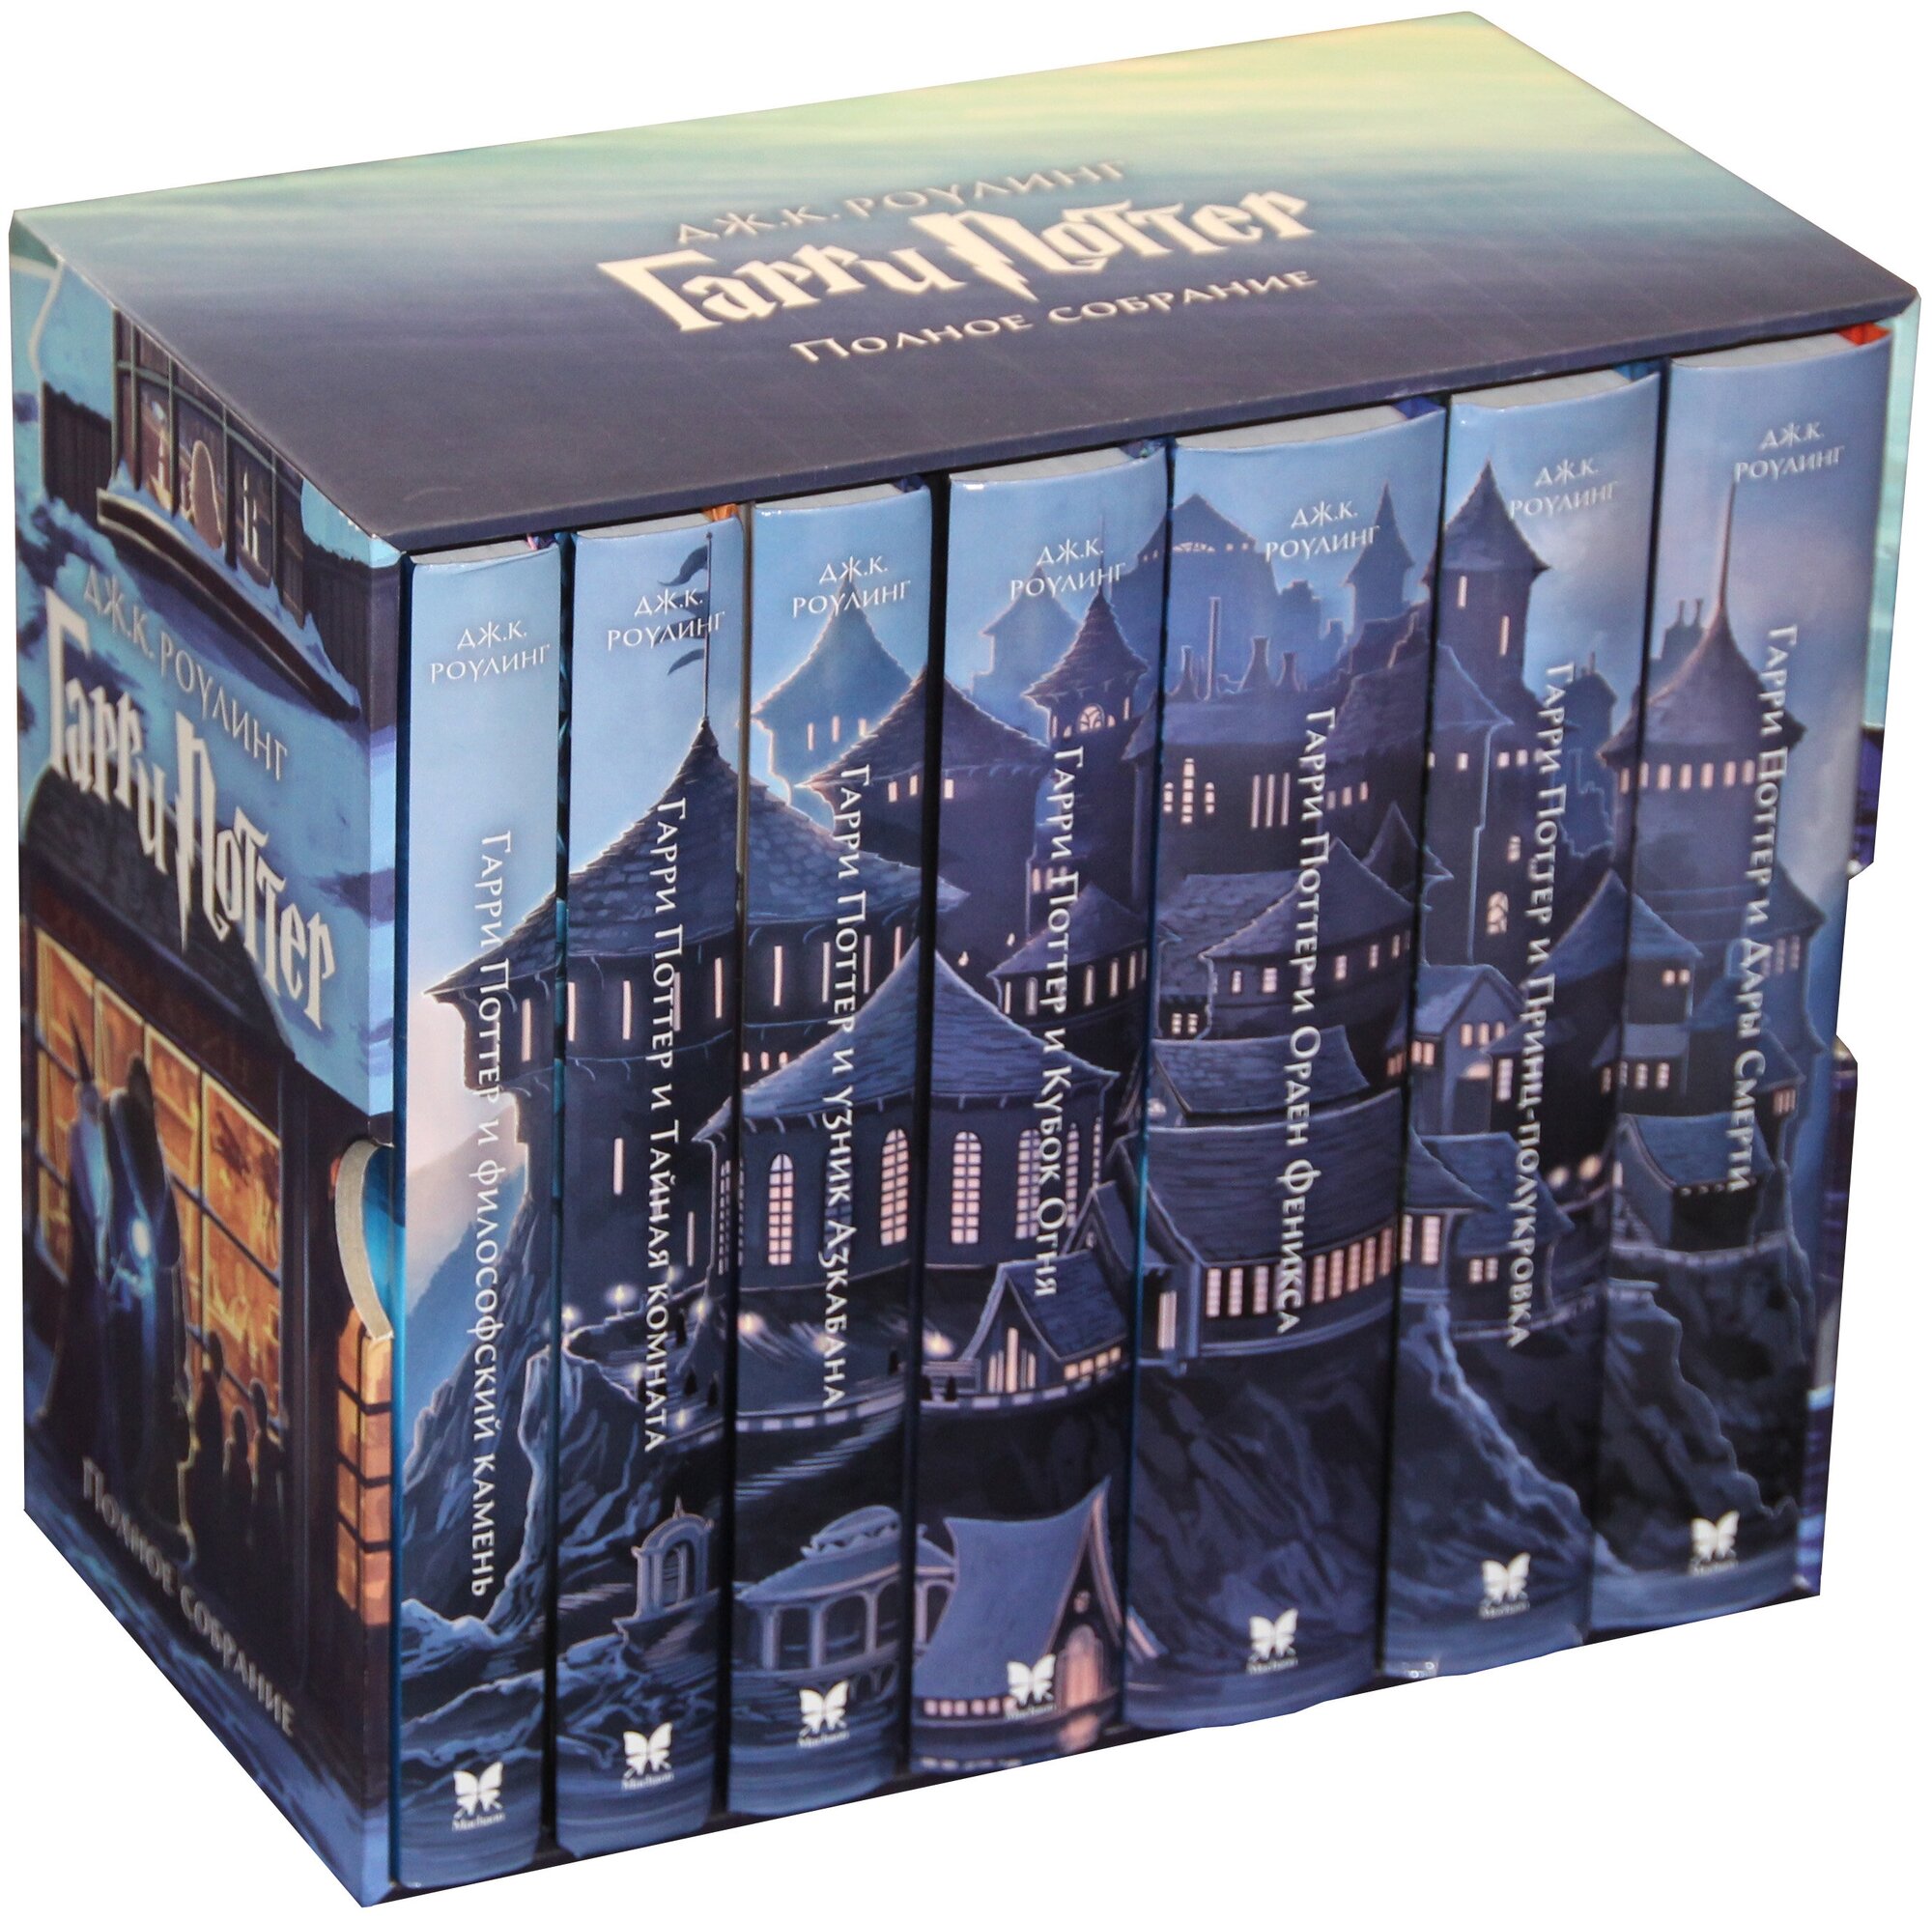 Гарри Поттер Полное собрание Комплект из 7 книг в футляре Книга Роулинг Дж К 6+